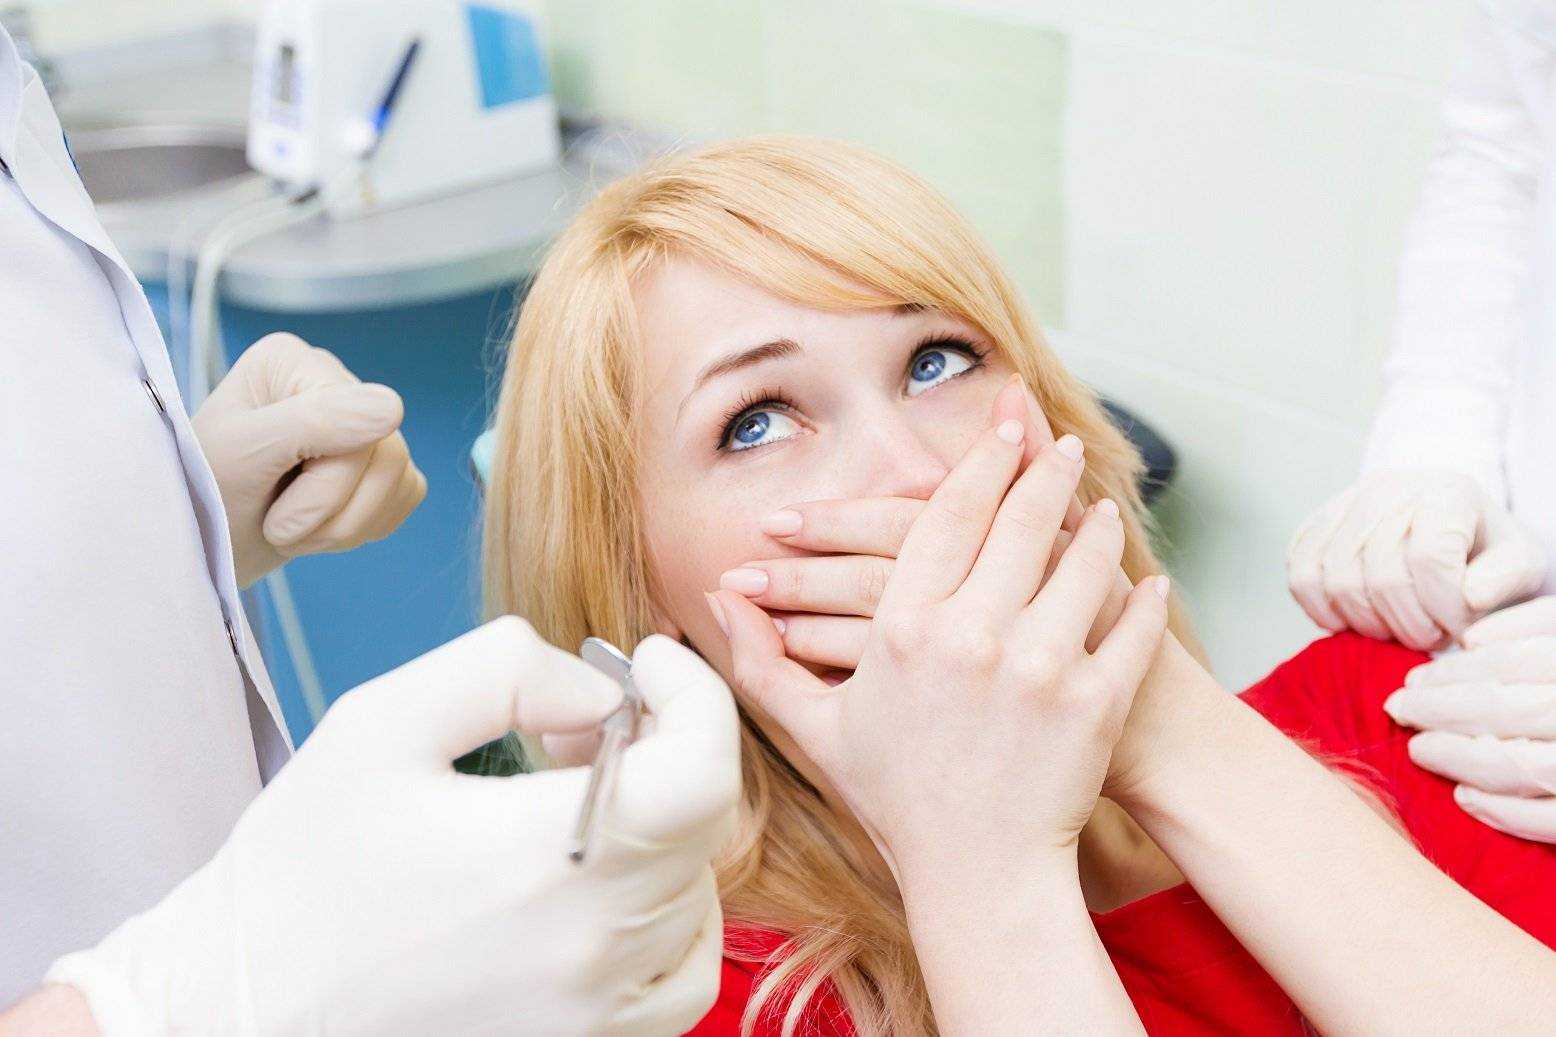 Как не бояться стоматолога - советы психолога взрослым и детям